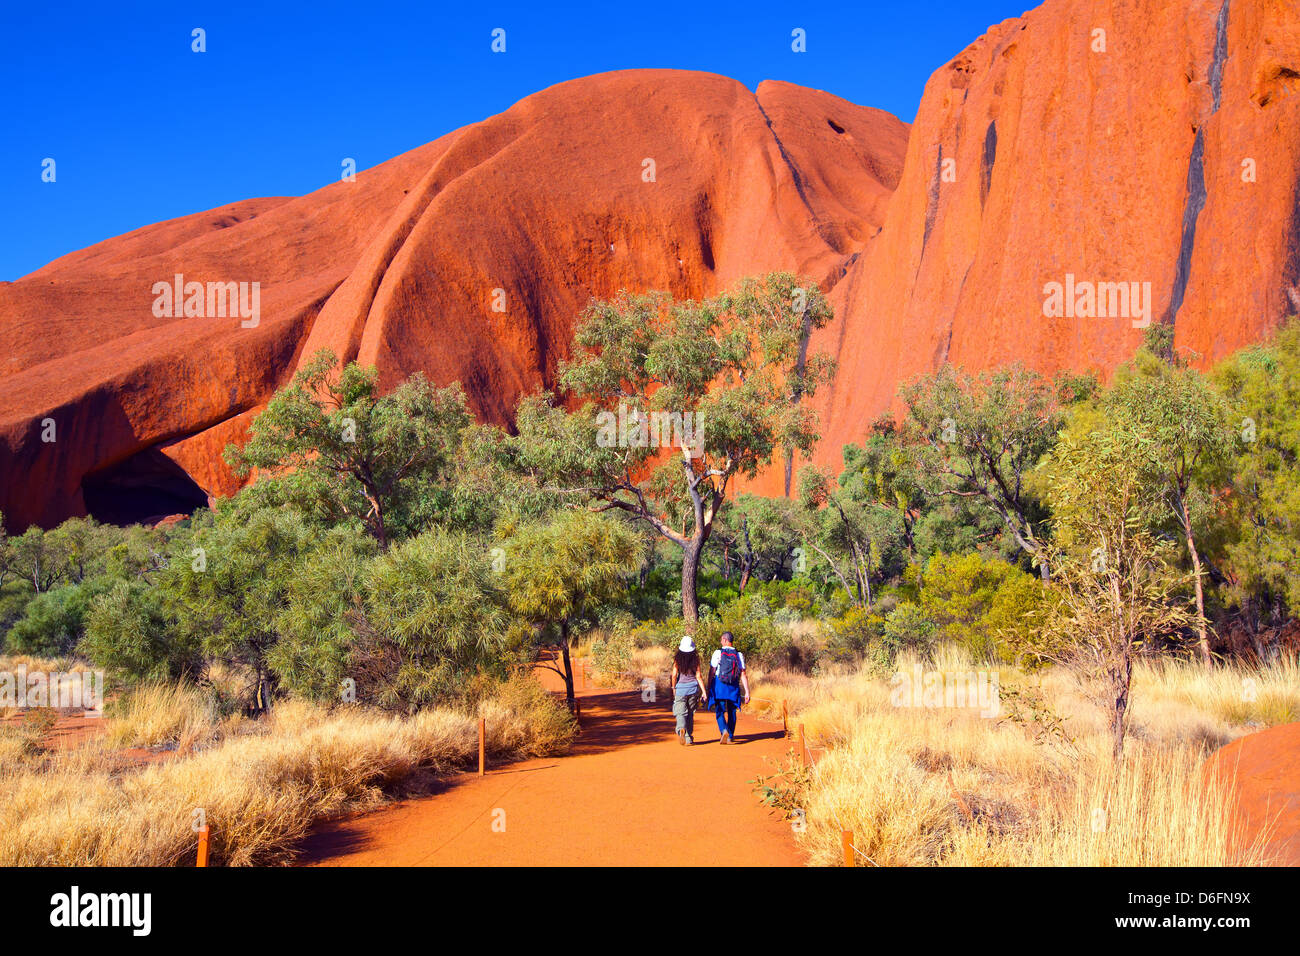 Paesaggi Australian Outback Uluru Ayers Rock nel Territorio del Nord Australia centrale Foto Stock